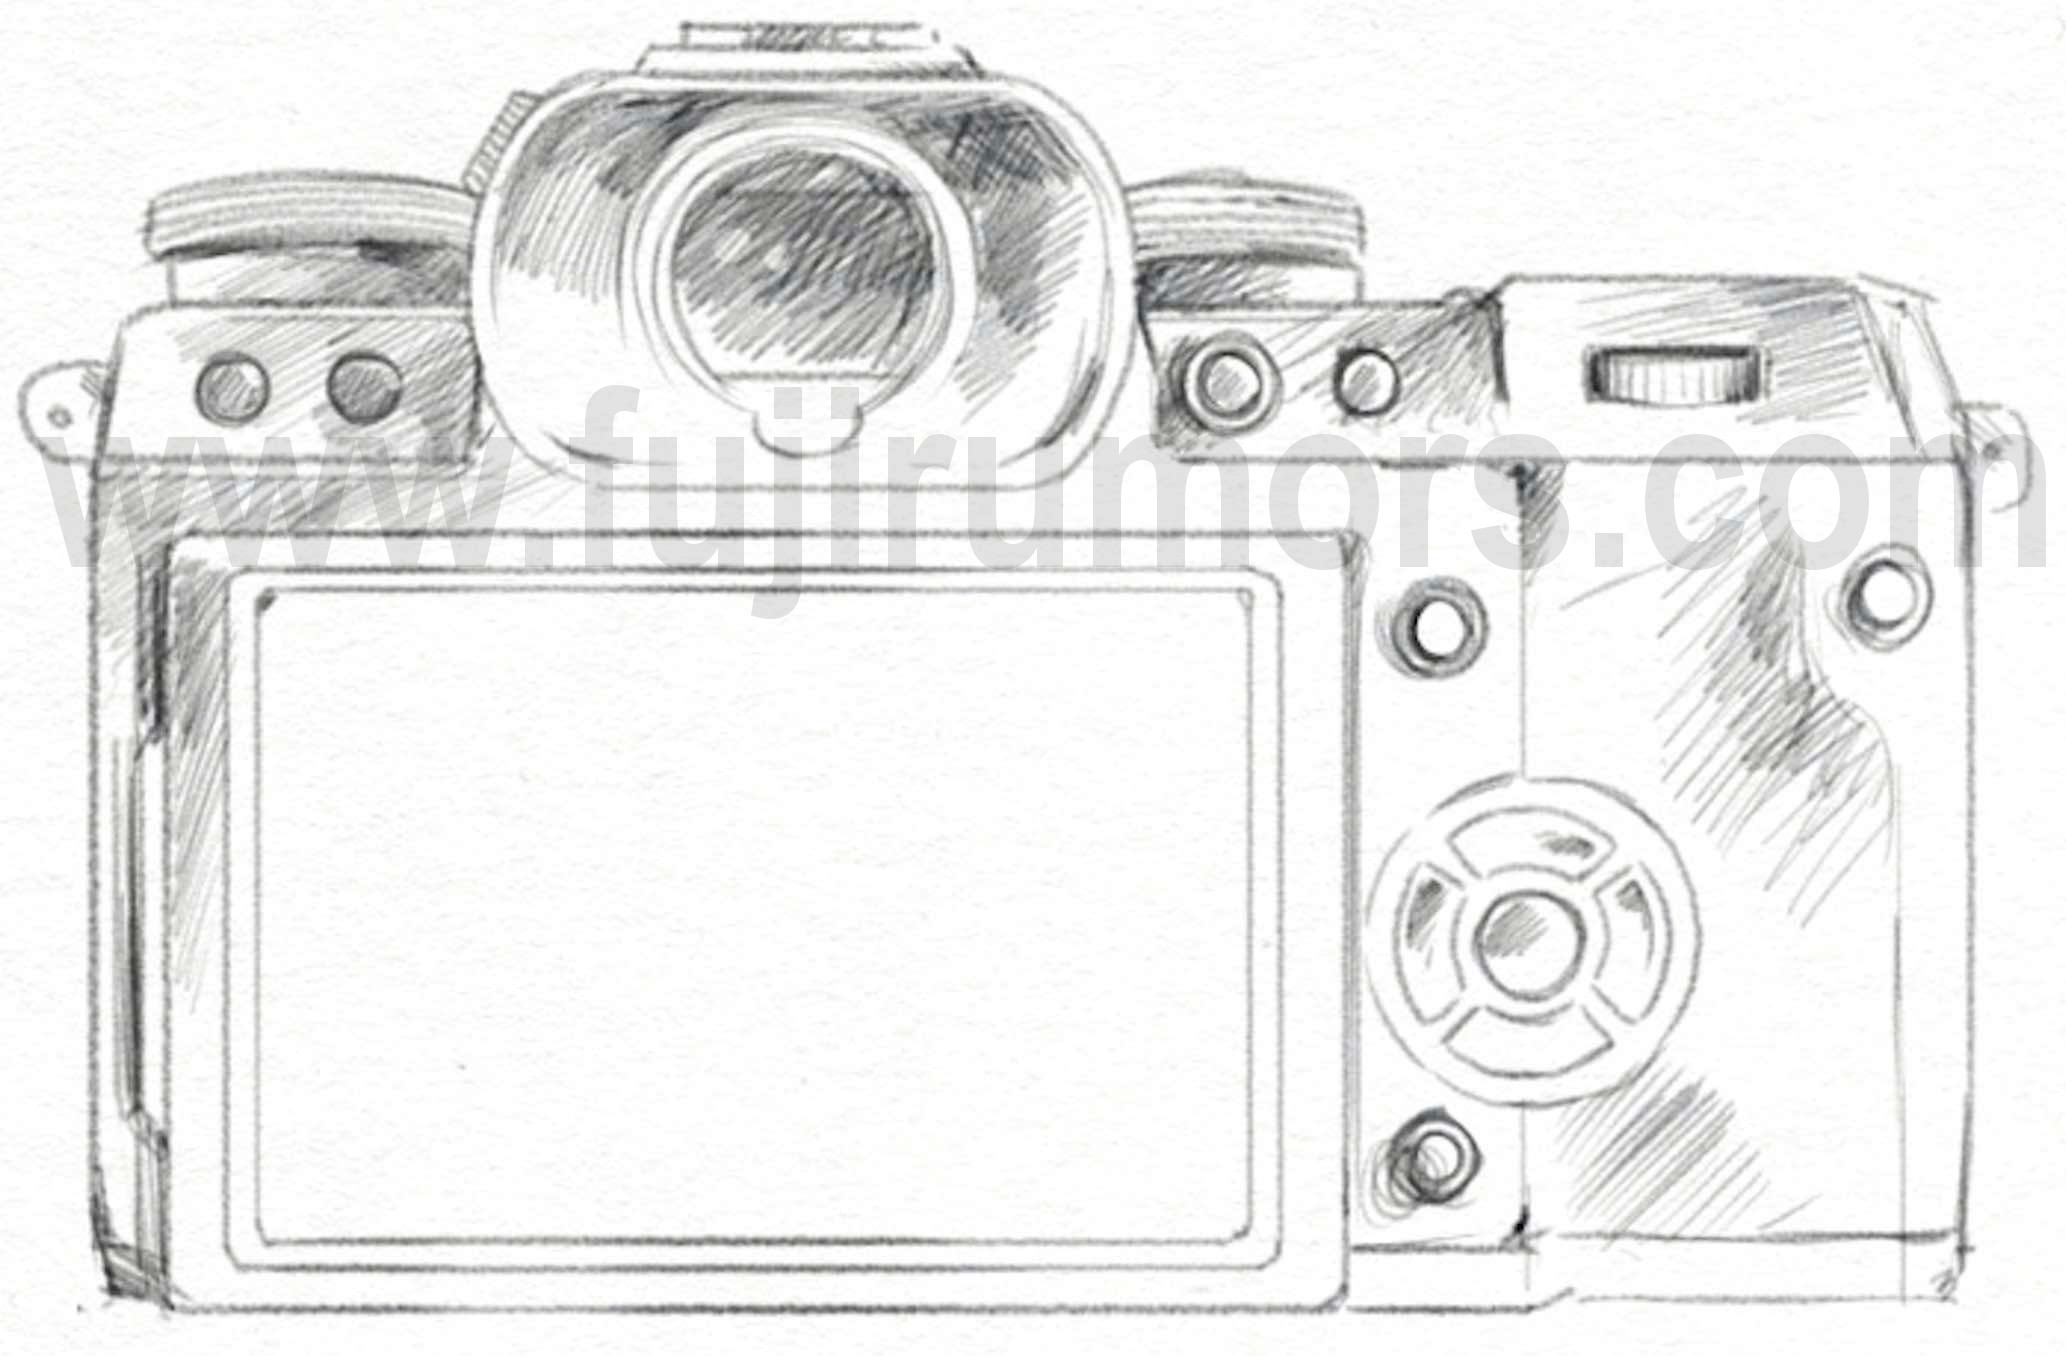 canon camera sketch